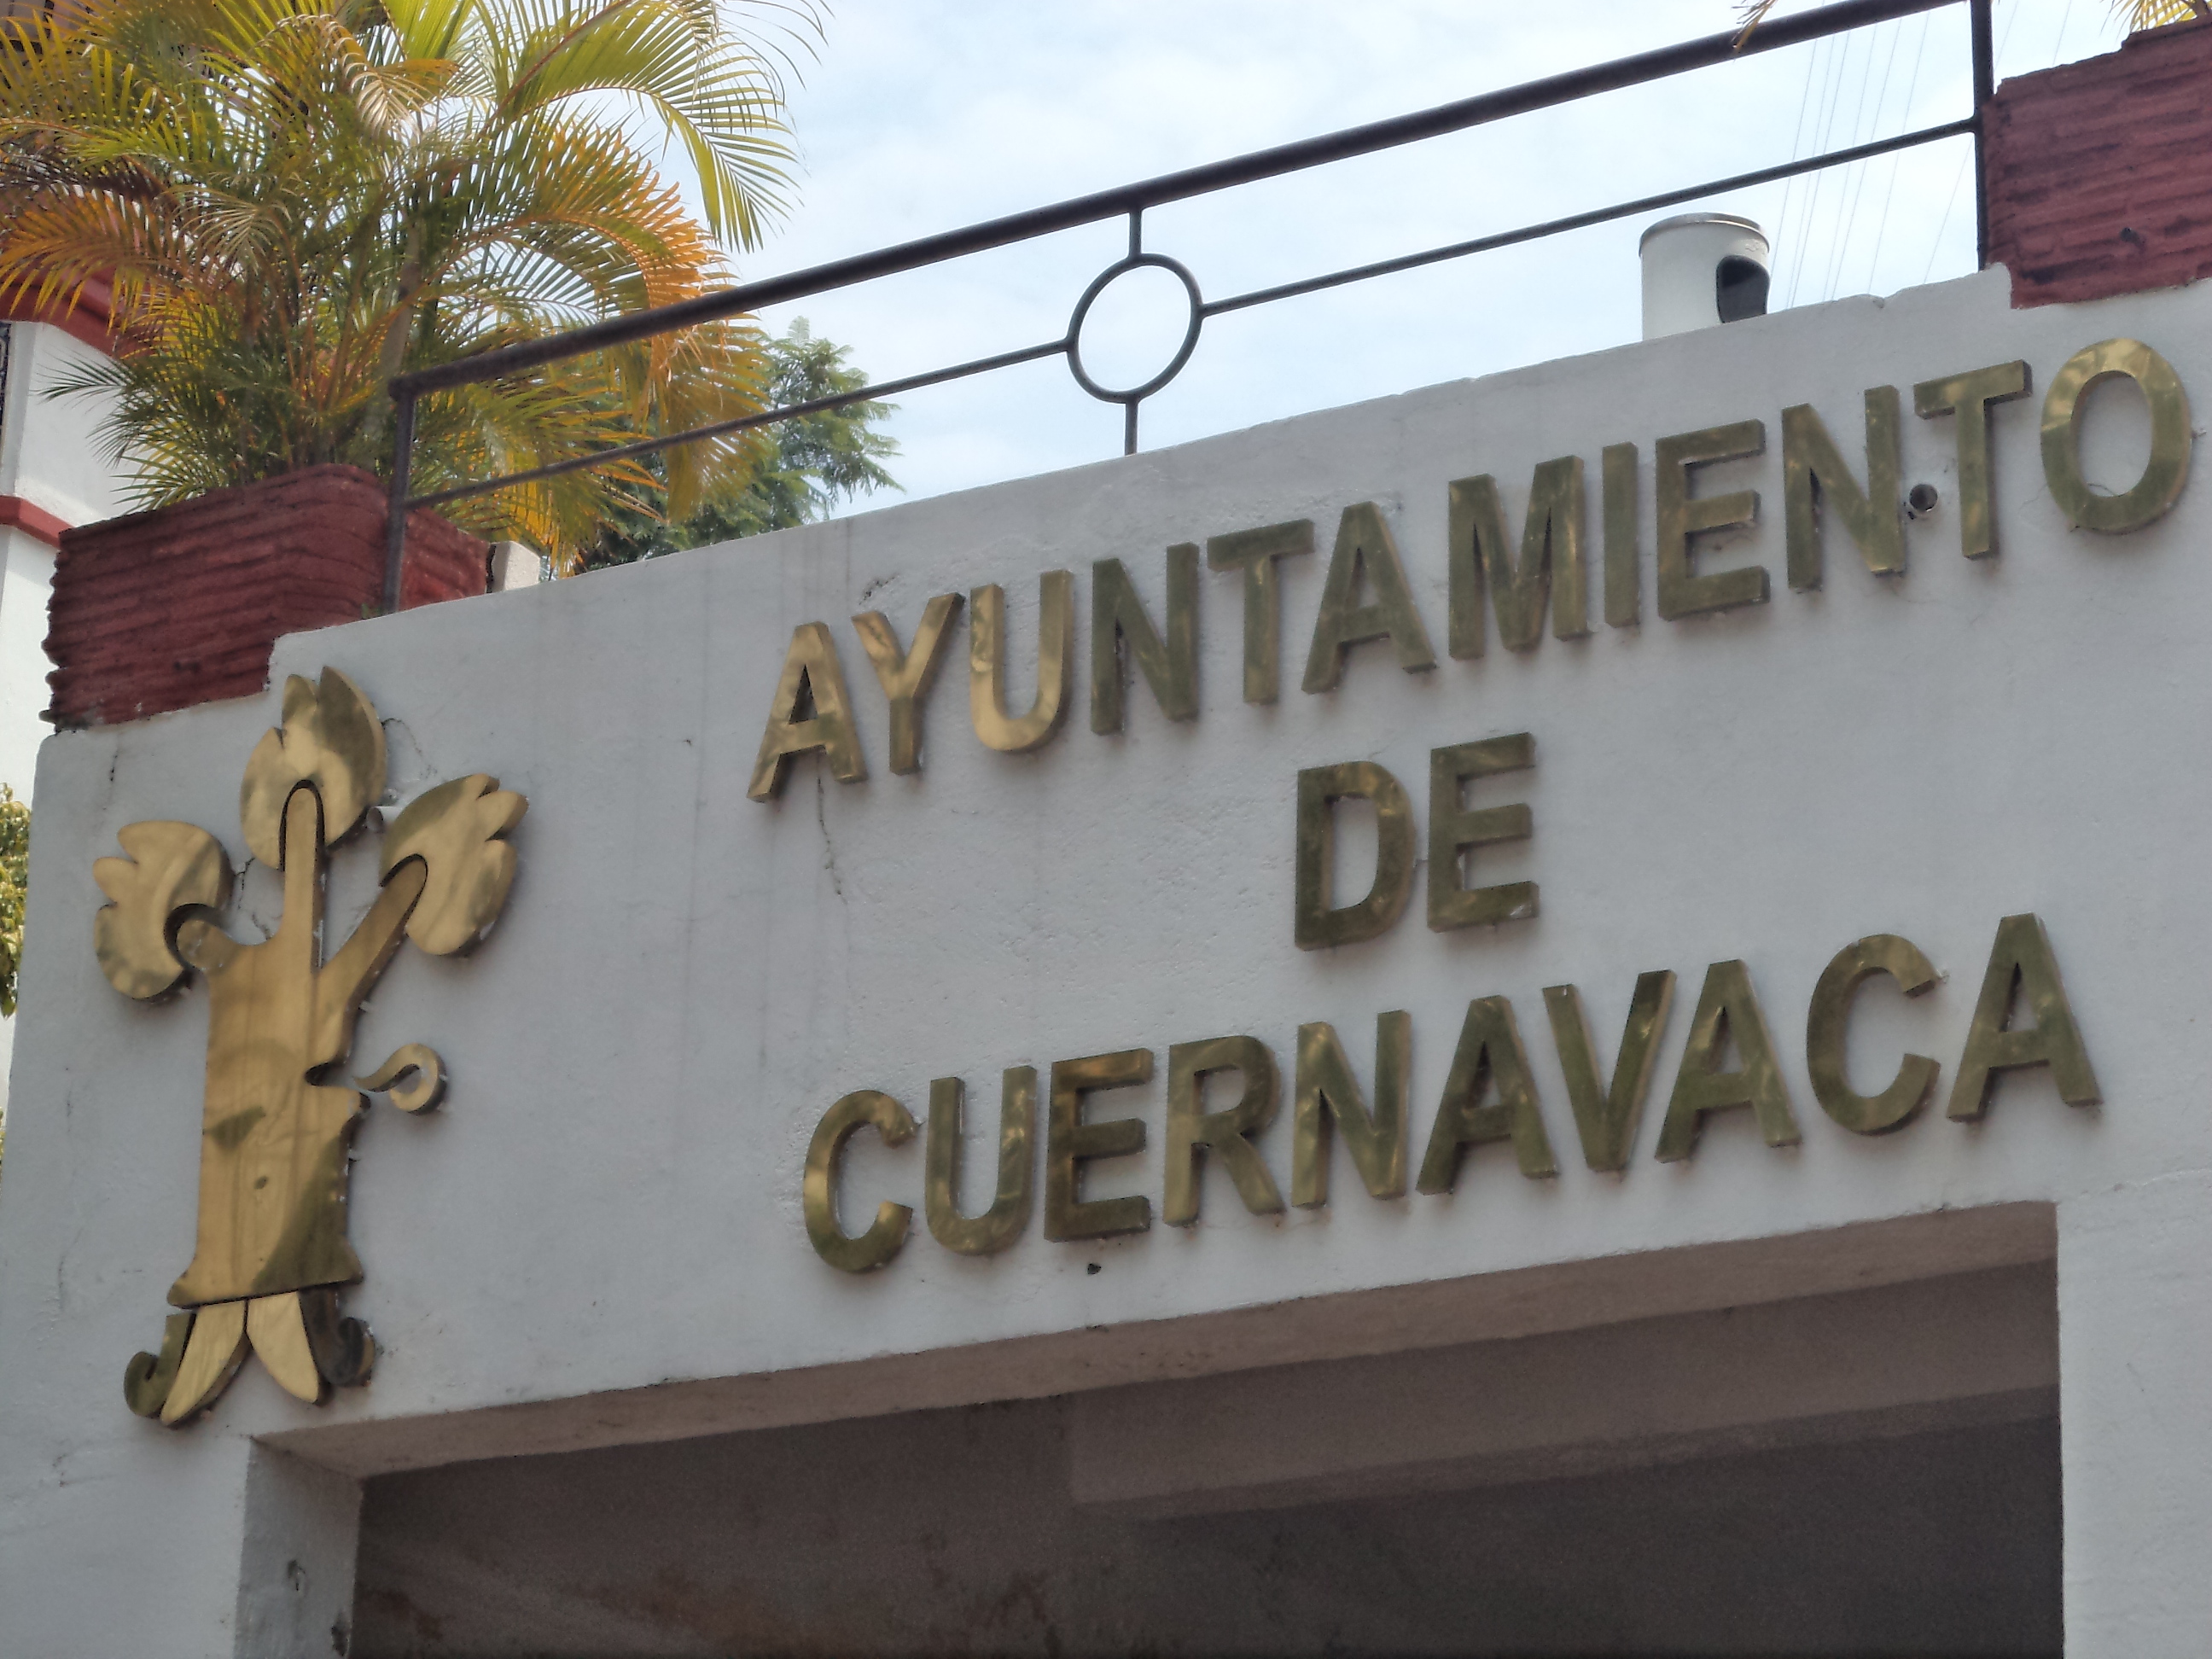 AYUNTAMIENTO DE CUERNAVACA